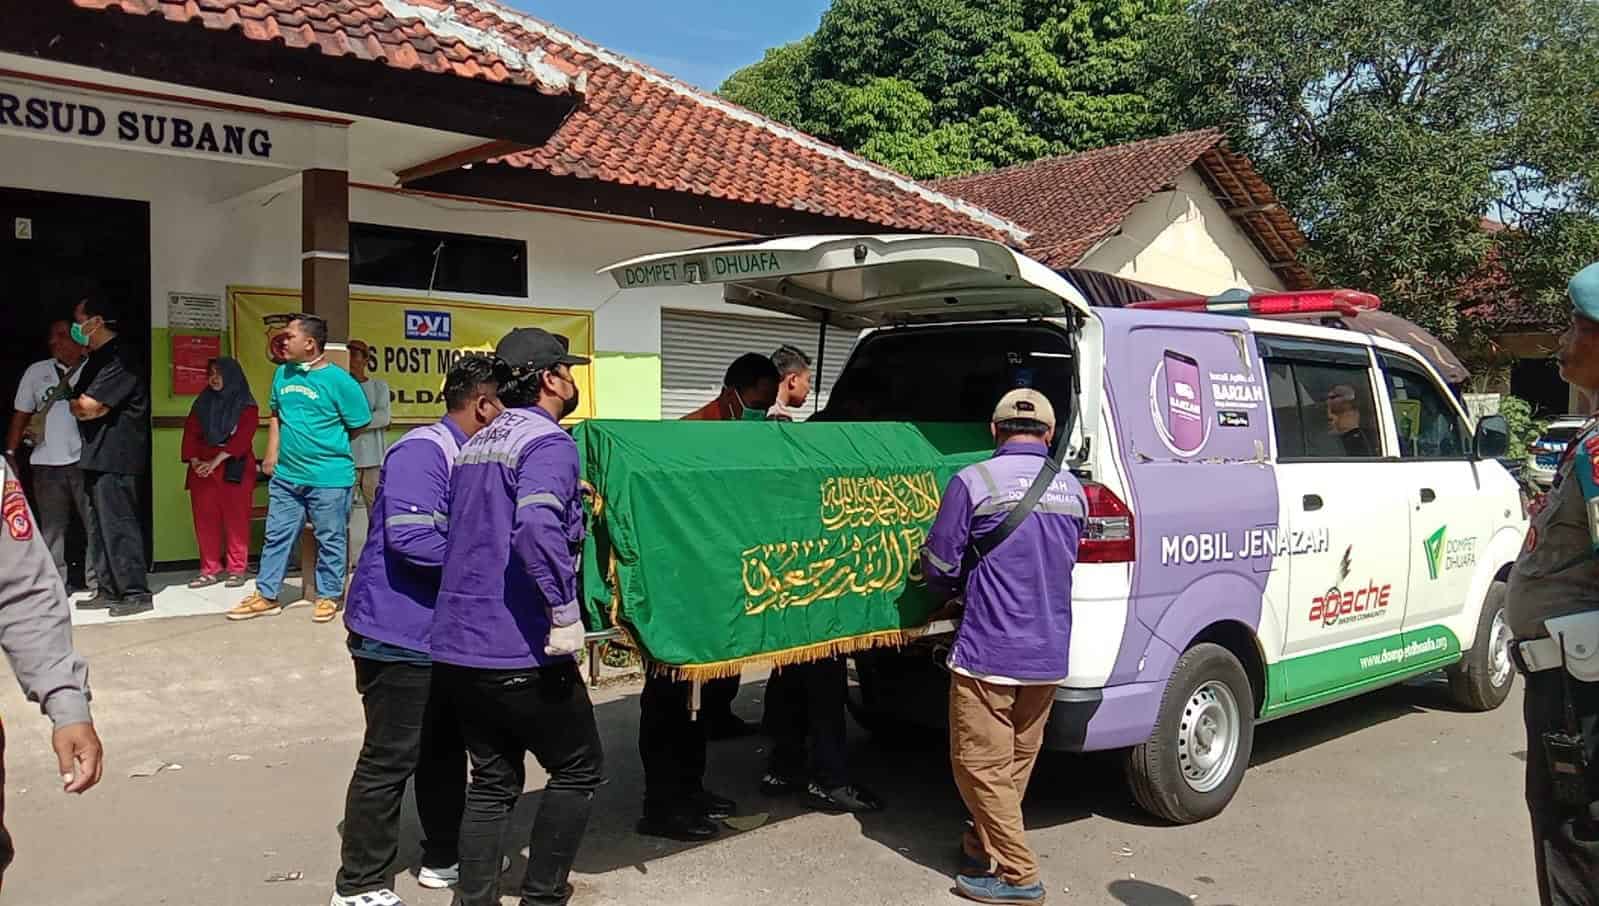 BARZAH Dompet Dhuafa bantu korban kecelakaan di Subang